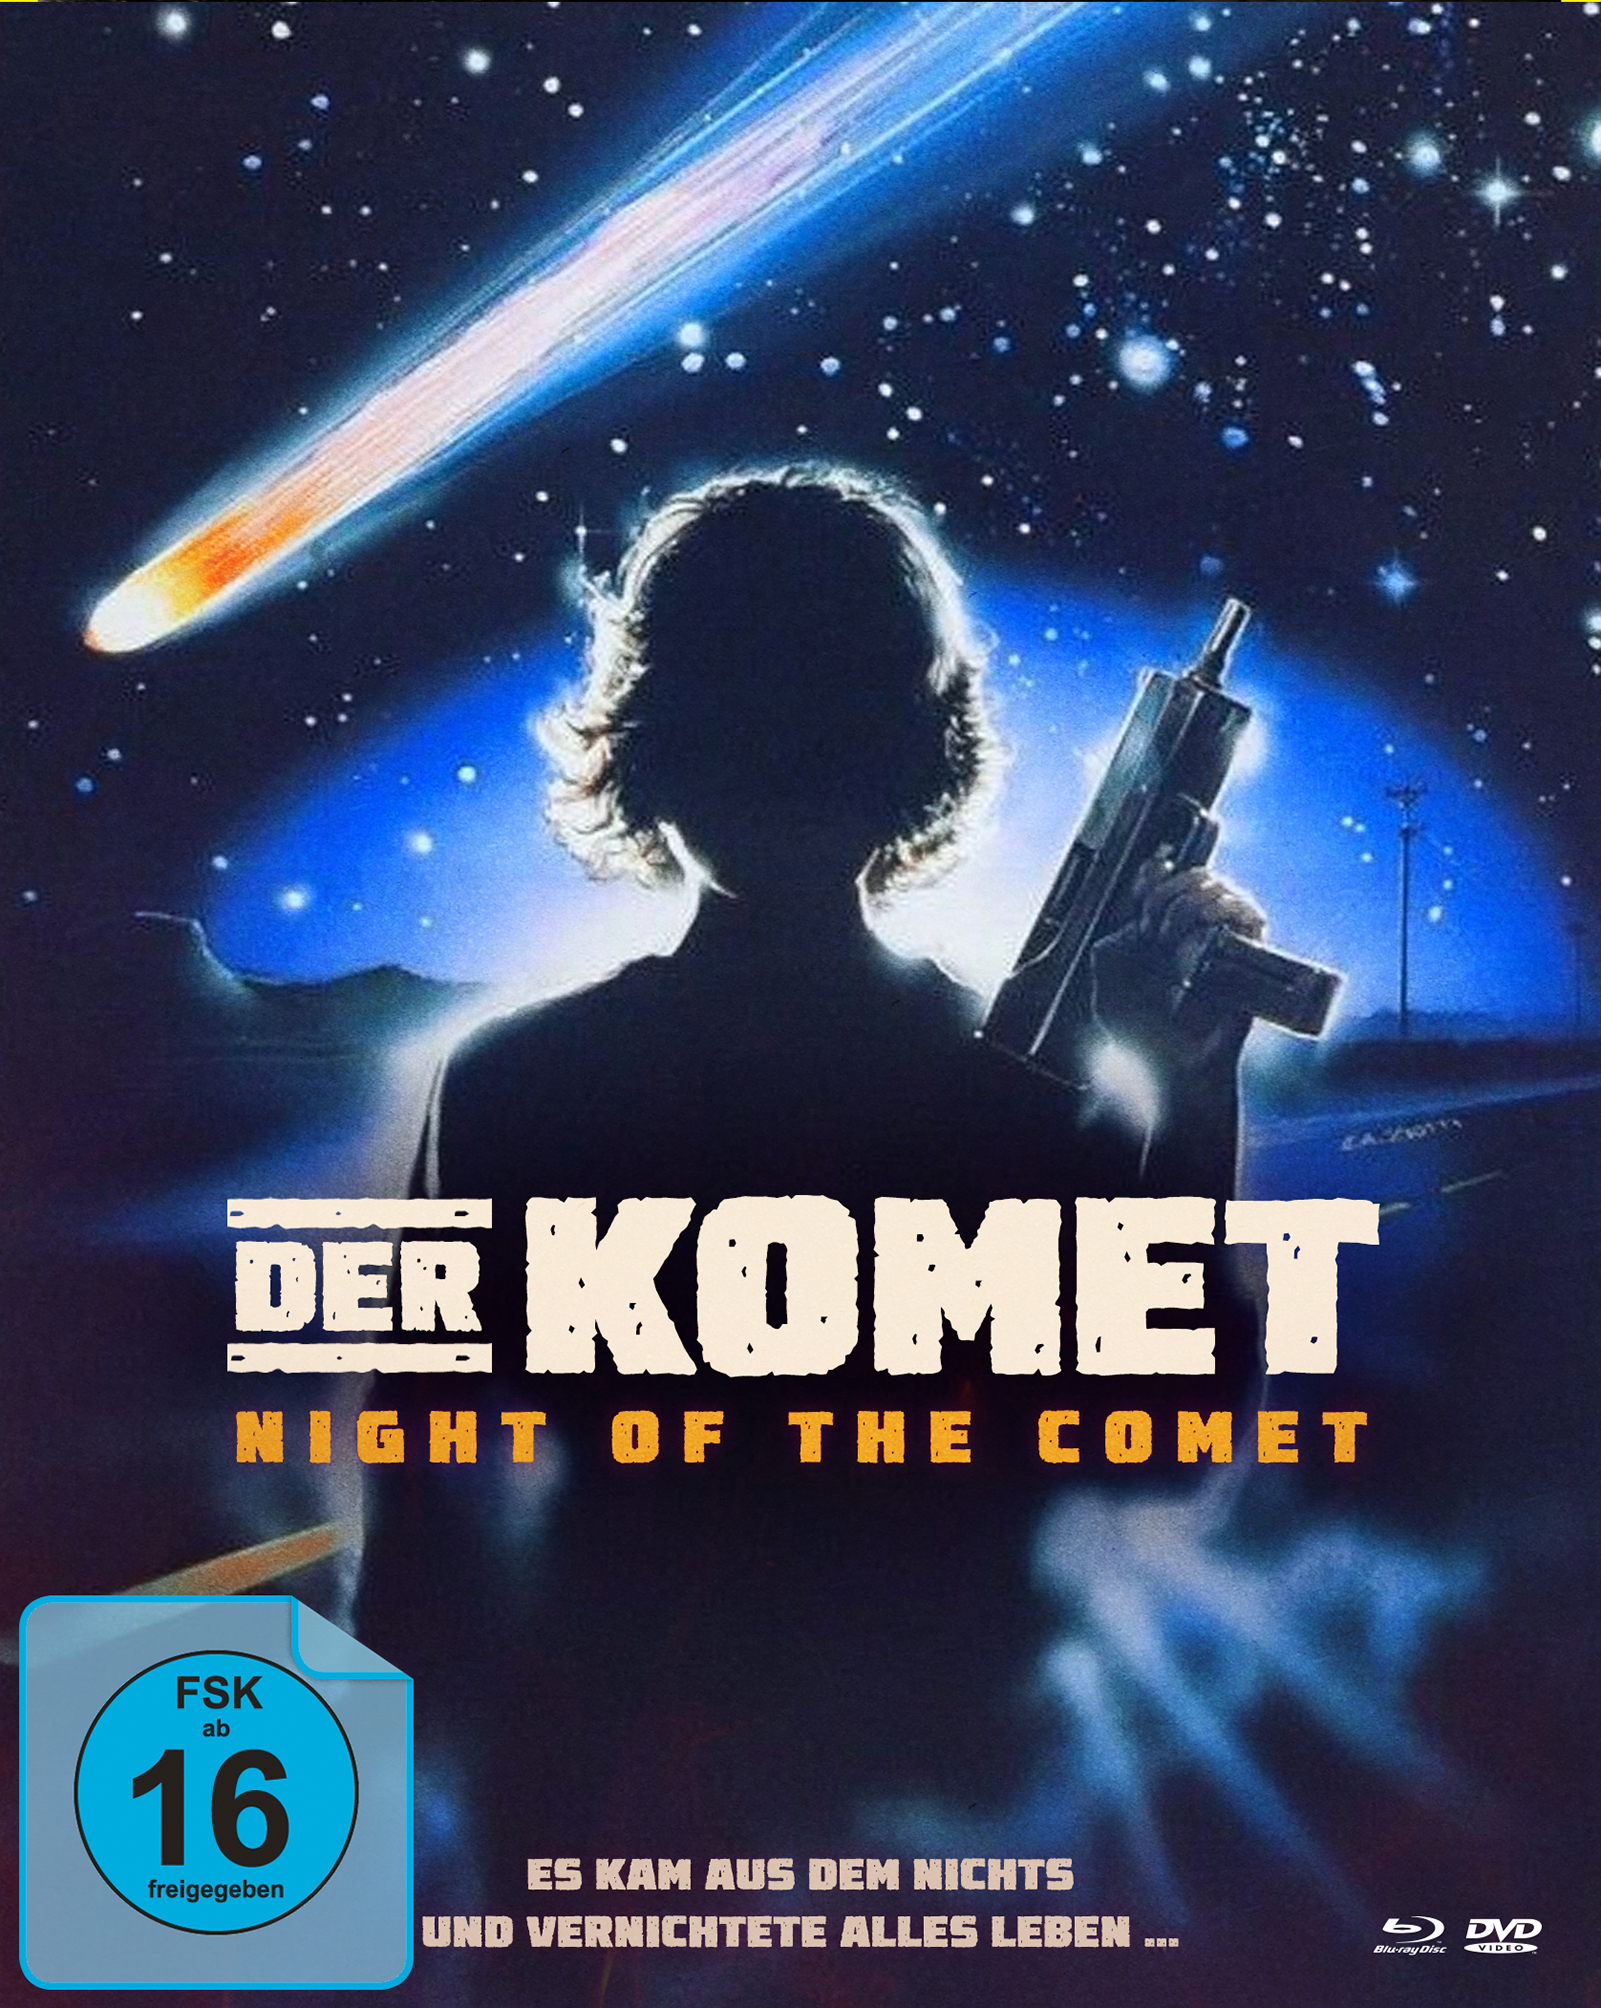 Der Komet (Mediabook B, Blu-ray + DVD) Cover